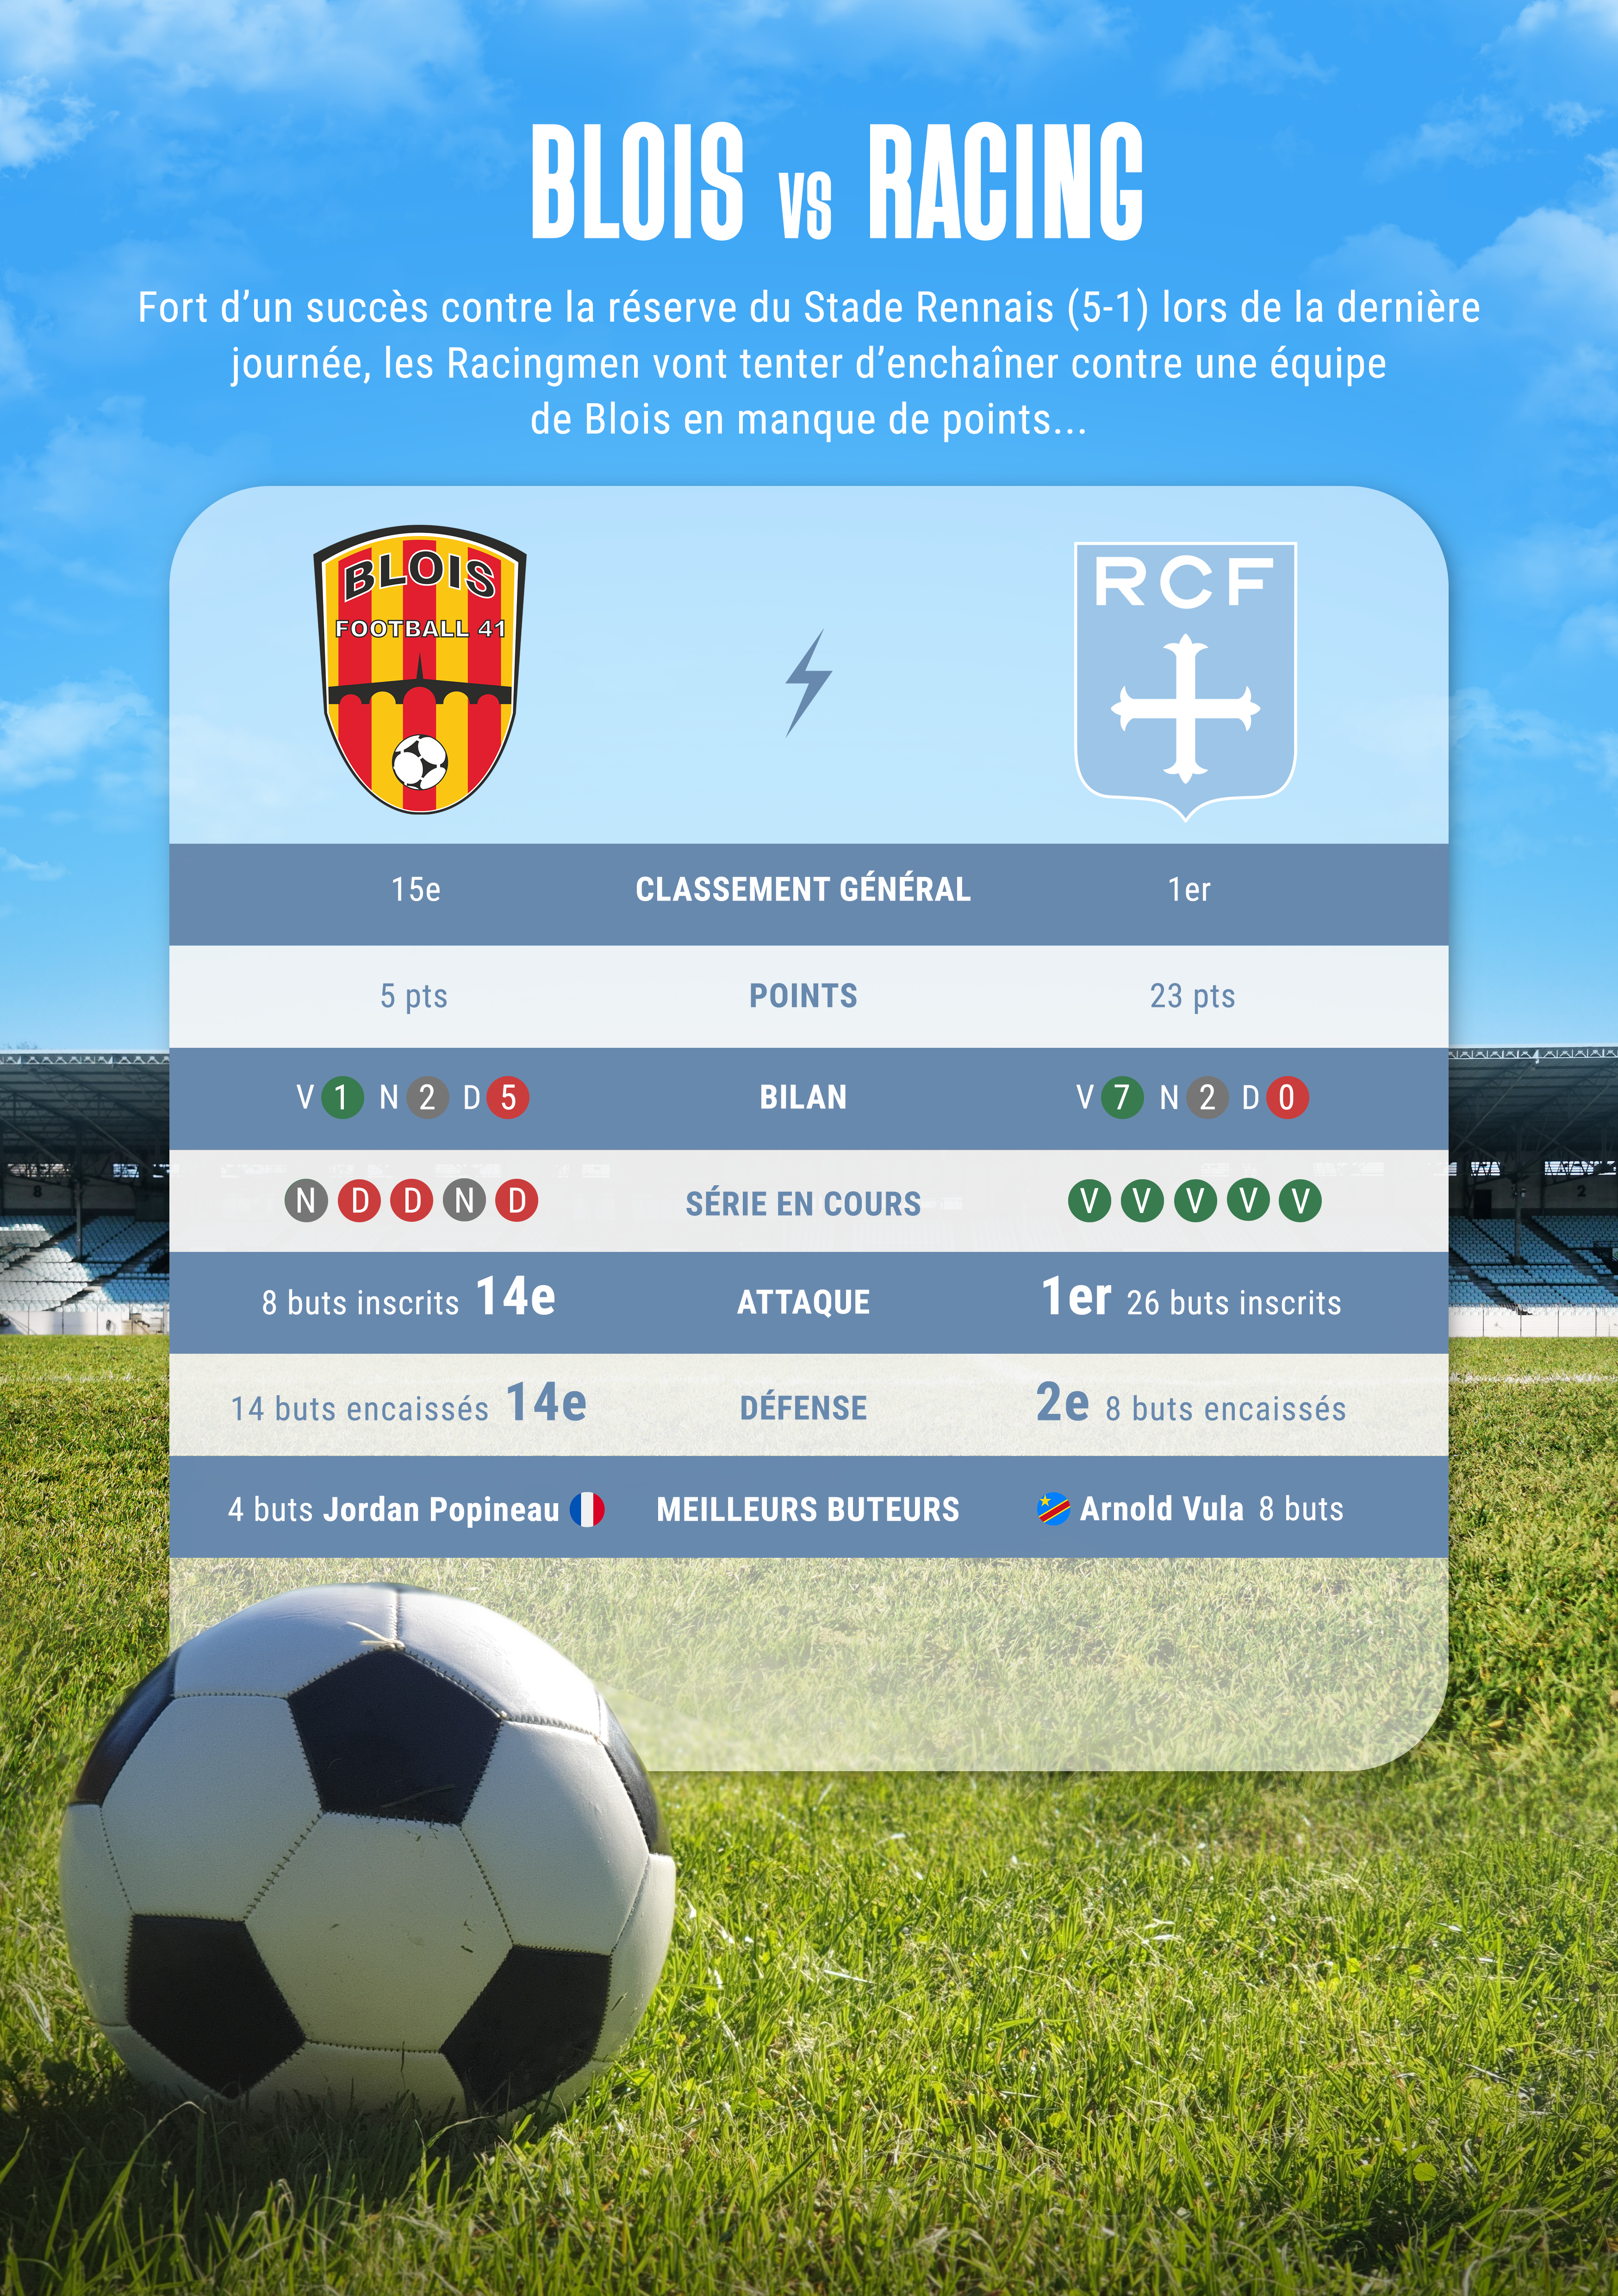 Statistiques entre Blois et le Racing avant le match opposant les deux équipes pour le compte de la 10e journée de National 2.